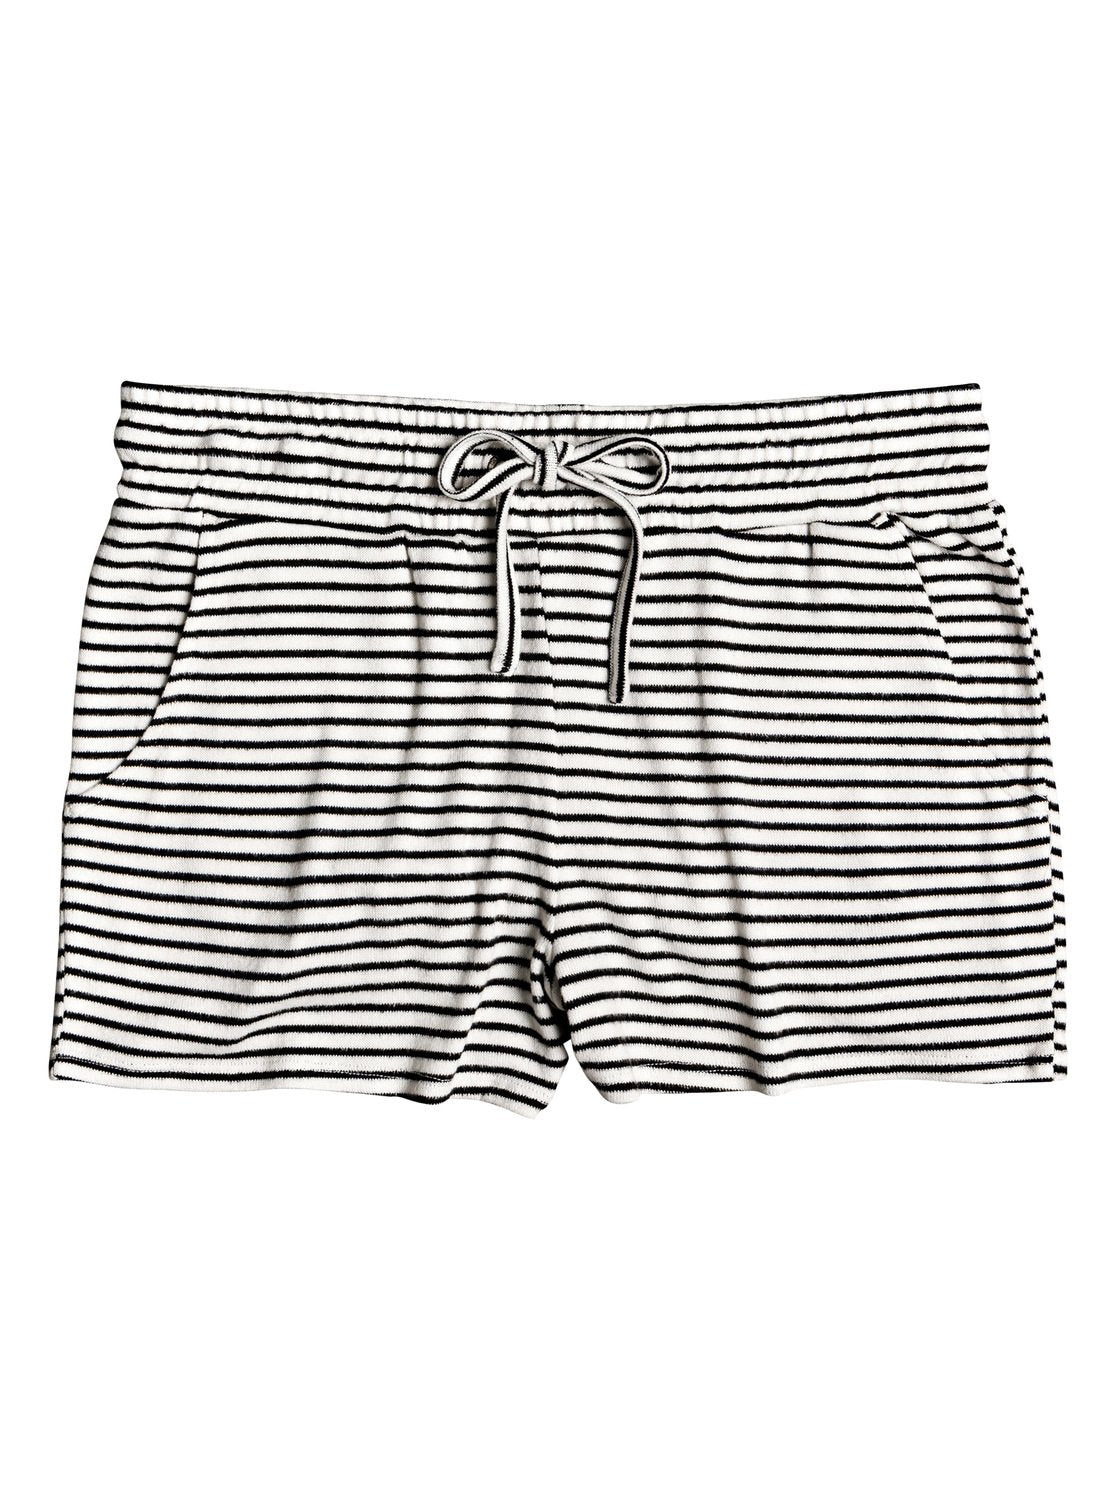 Roxy Forbidden Summer Stripe Short